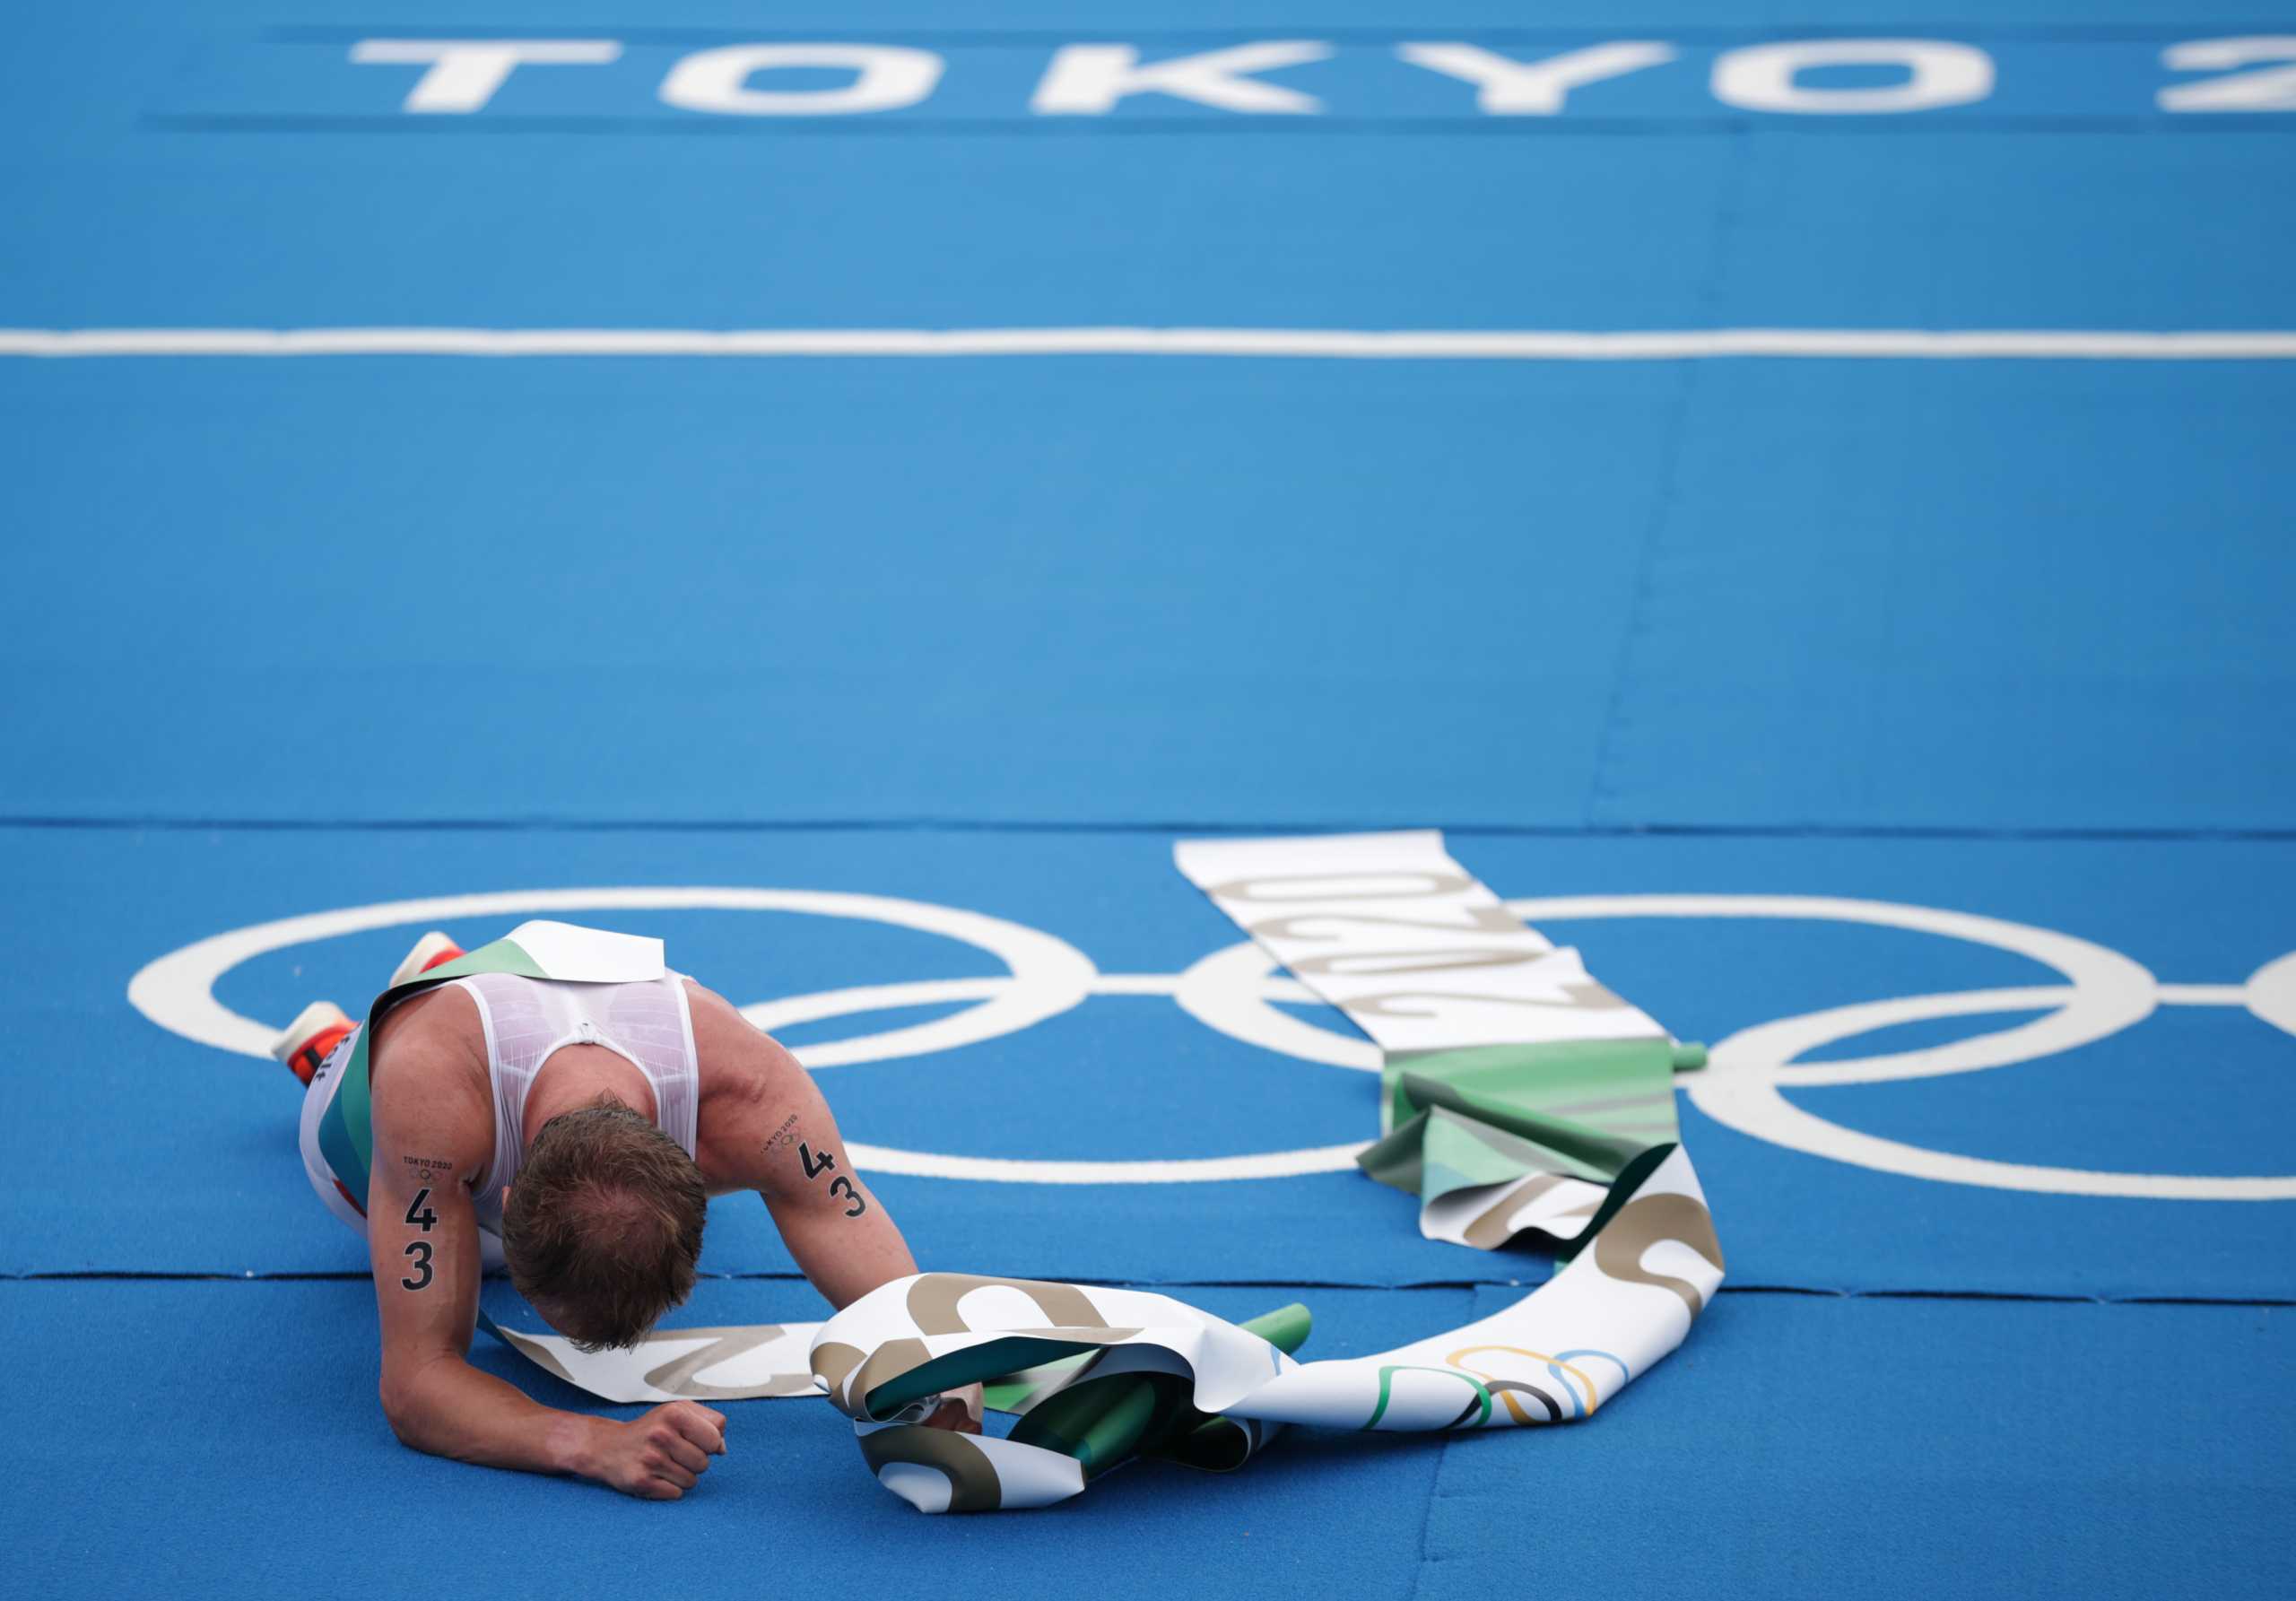 Ολυμπιακοί Αγώνες: Συγκλονιστικός τερματισμός, πήρε το χρυσό μετάλλιο, έκανε εμετό και κατέρρευσε